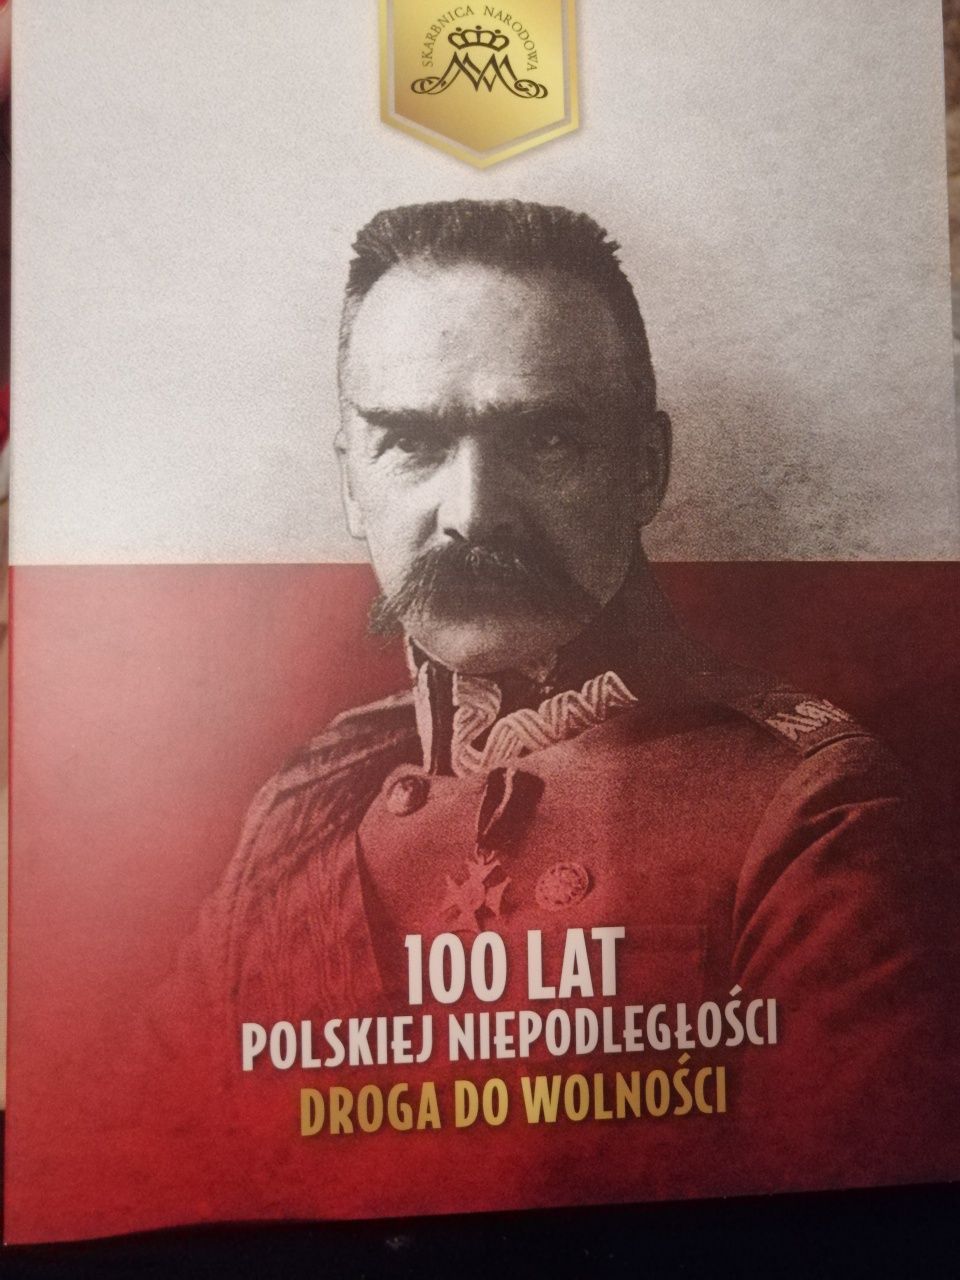 100 lat Polskiej Niepodległości numizmat Józef Piłsudski Skarbnica